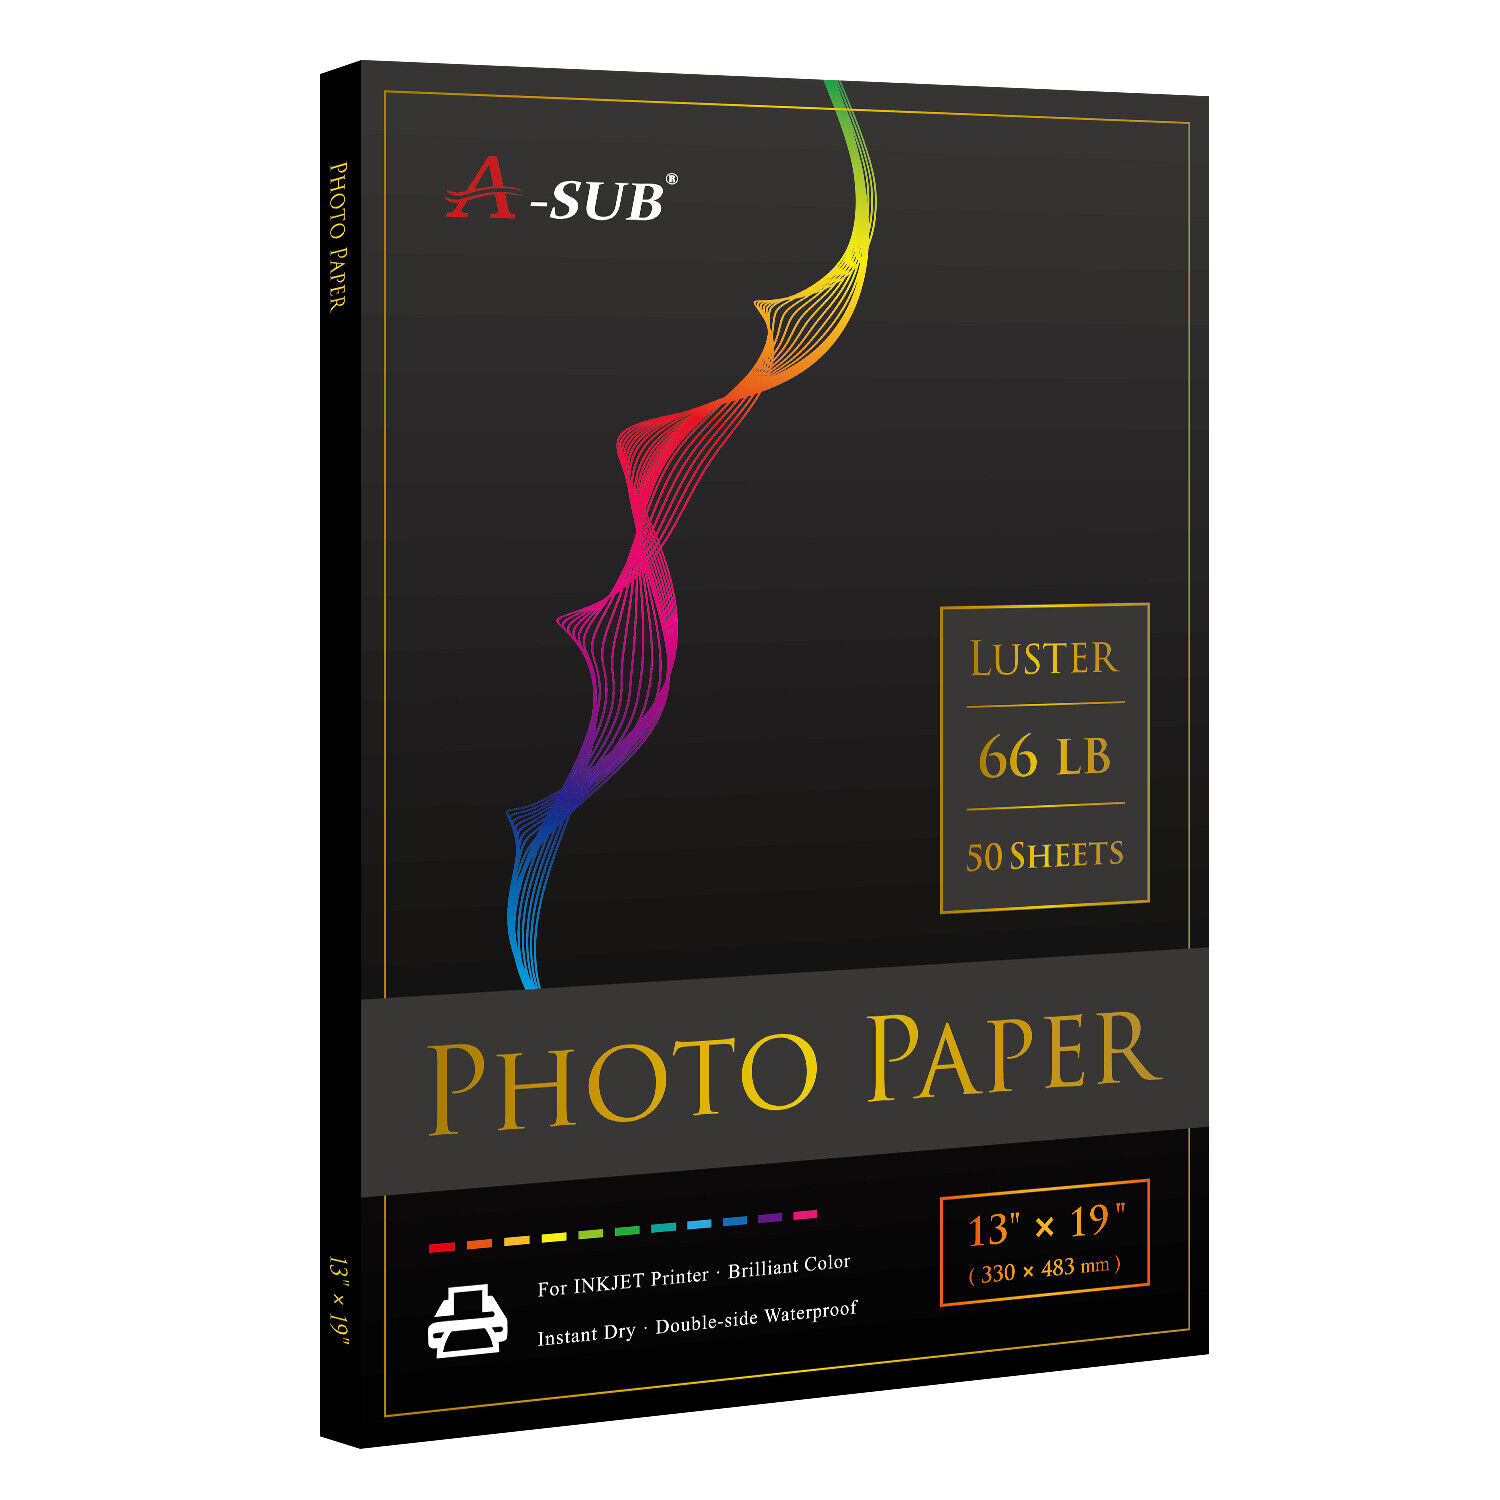 A-SUB Pro Luster Photo Paper 13X19 for Inkjet Printer 250g Semi Gloss 50 PK 66lb